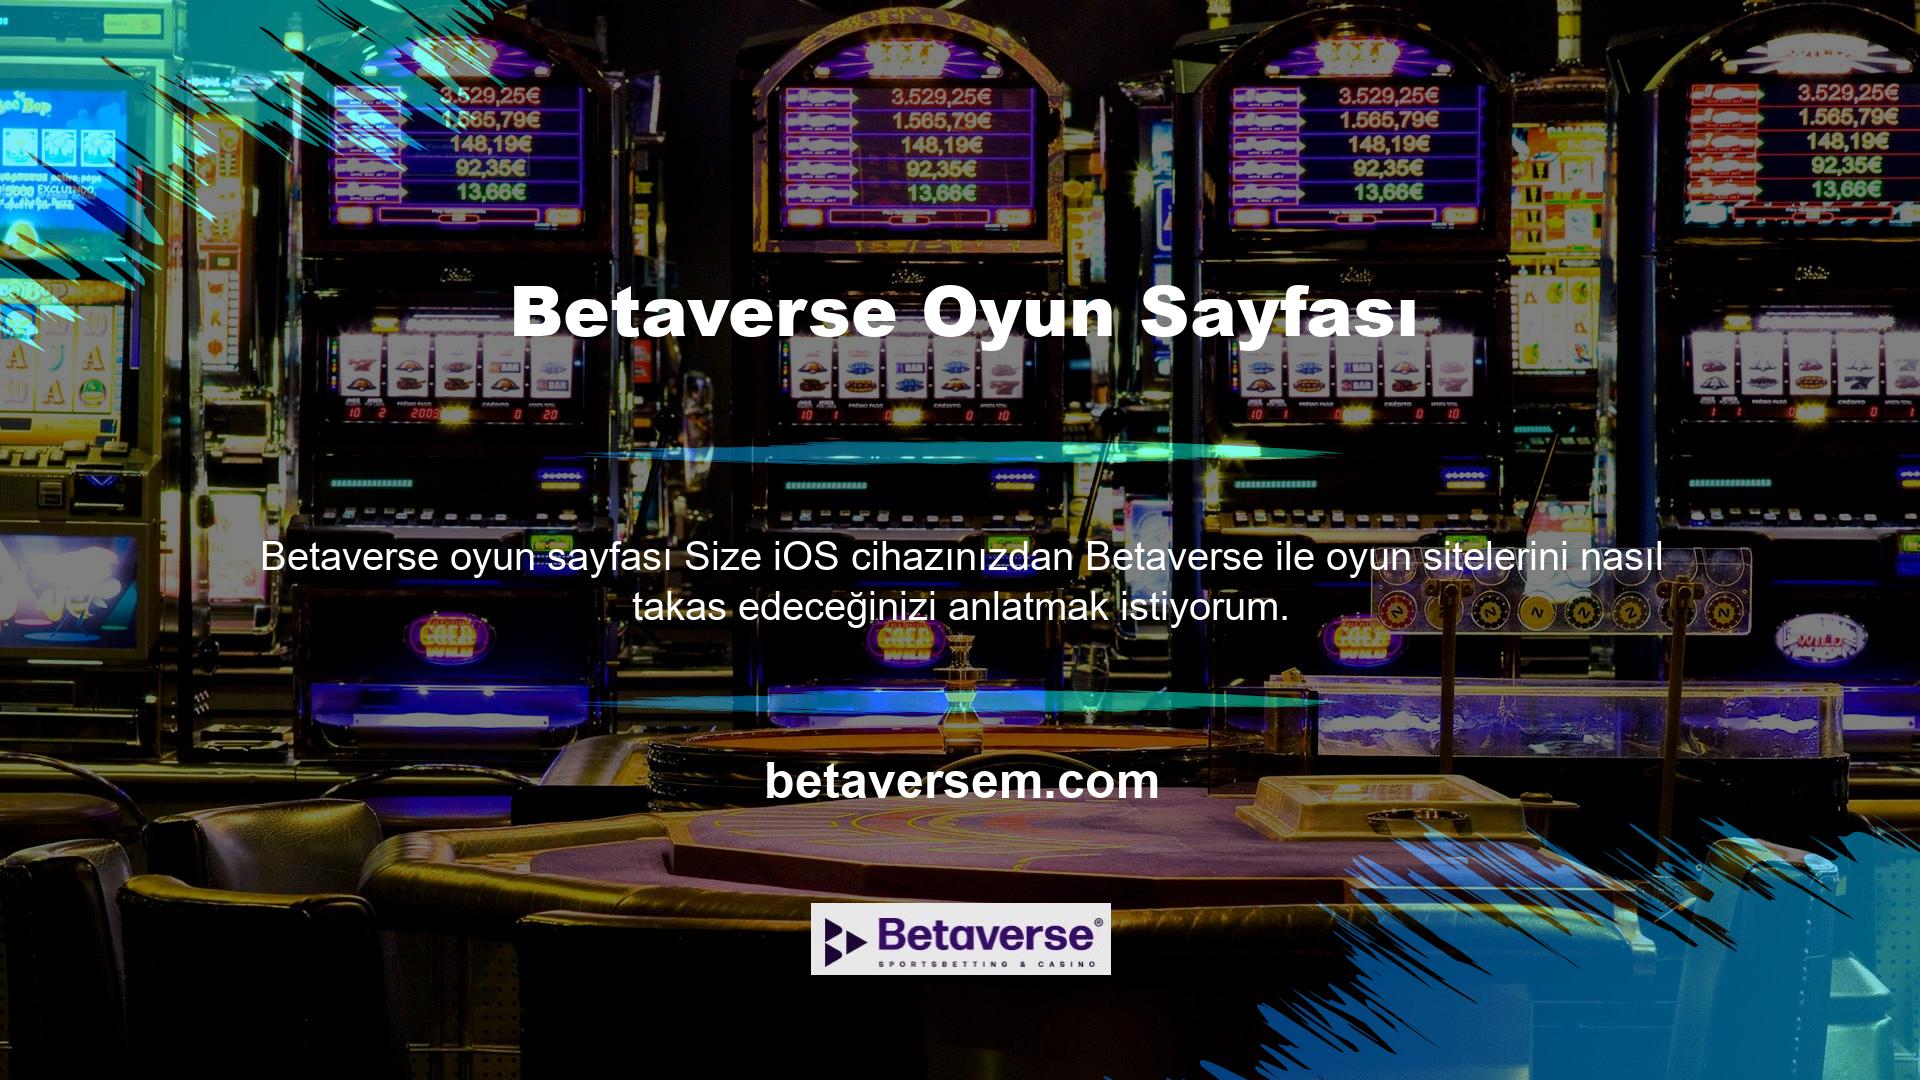 Betaverse oyun sayfası